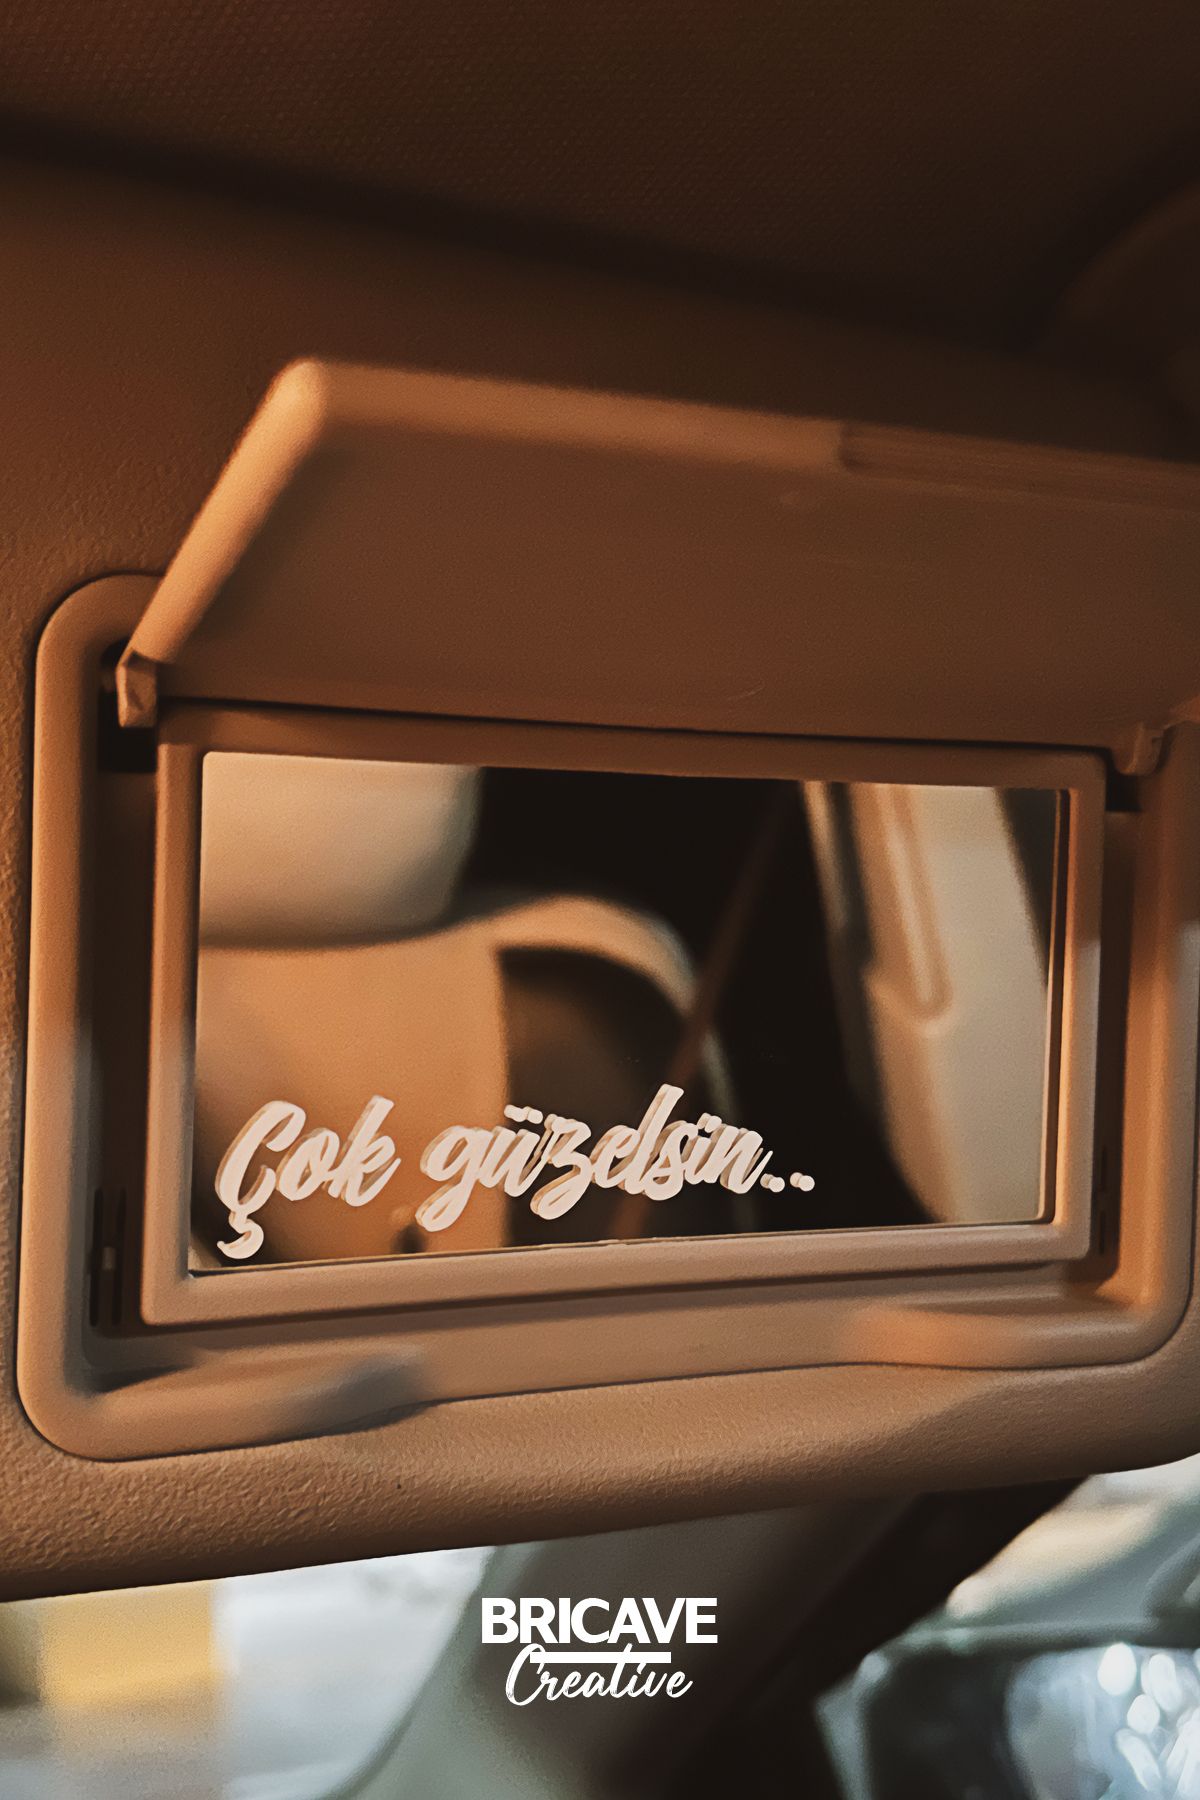 Bricave Çok Güzelsin Güneşlik Ayna Yazısı Araba-Motosiklet Cam Etiket Sticker 7,2x1,8cm